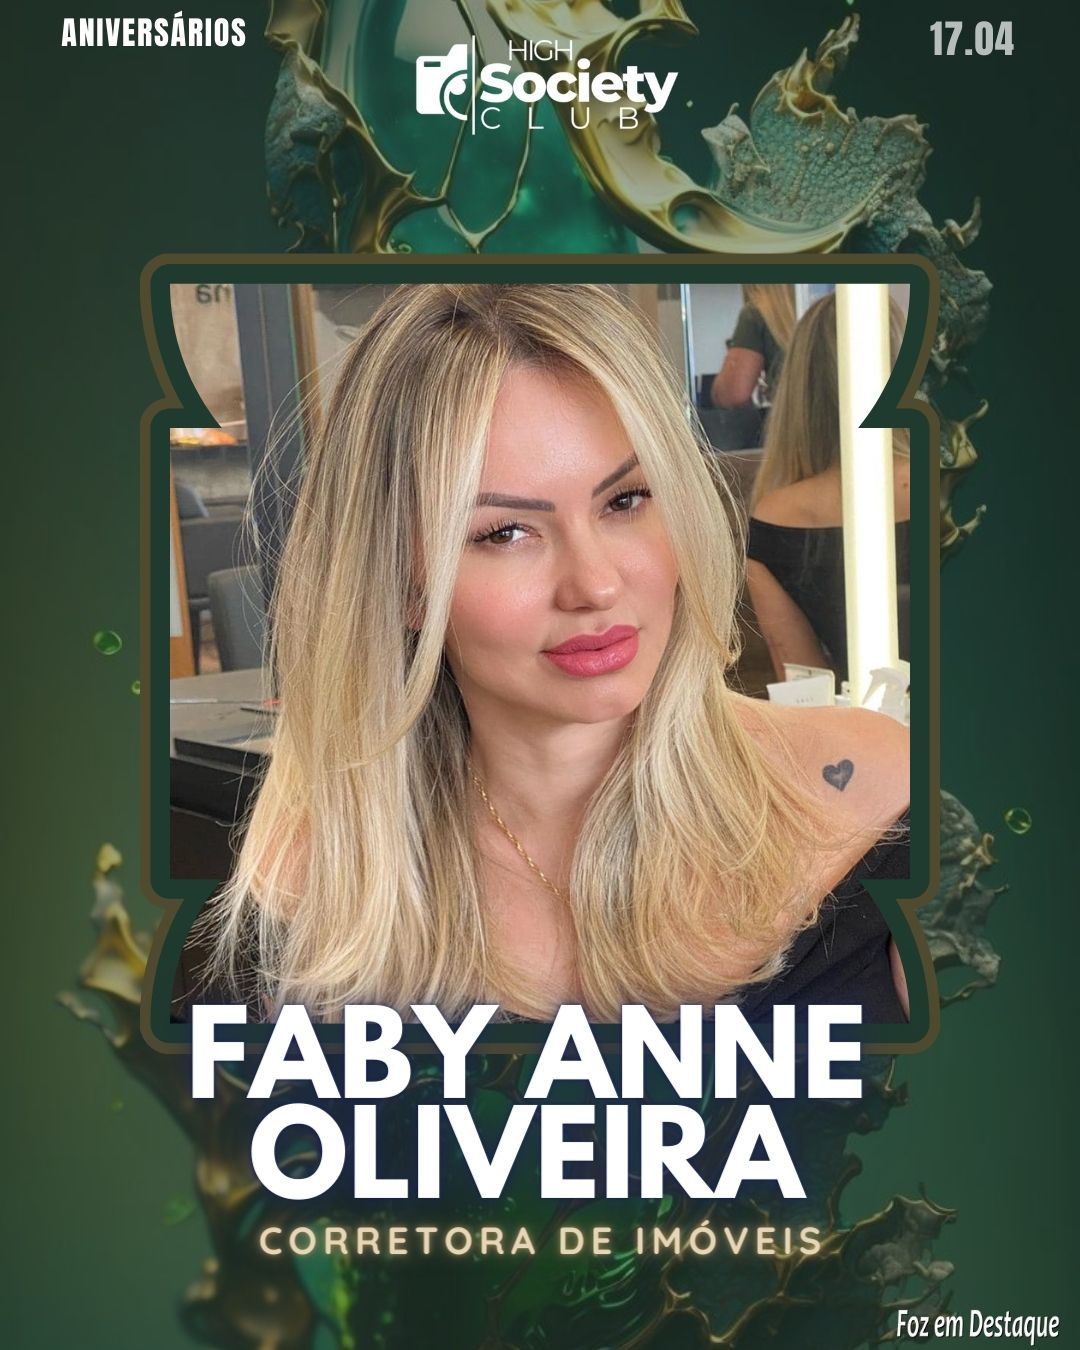 Faby Anne Oliveira - Corretora de Imóveis 
Aniversários 17 de Abril 2024  High Society Club Foz em Destaque